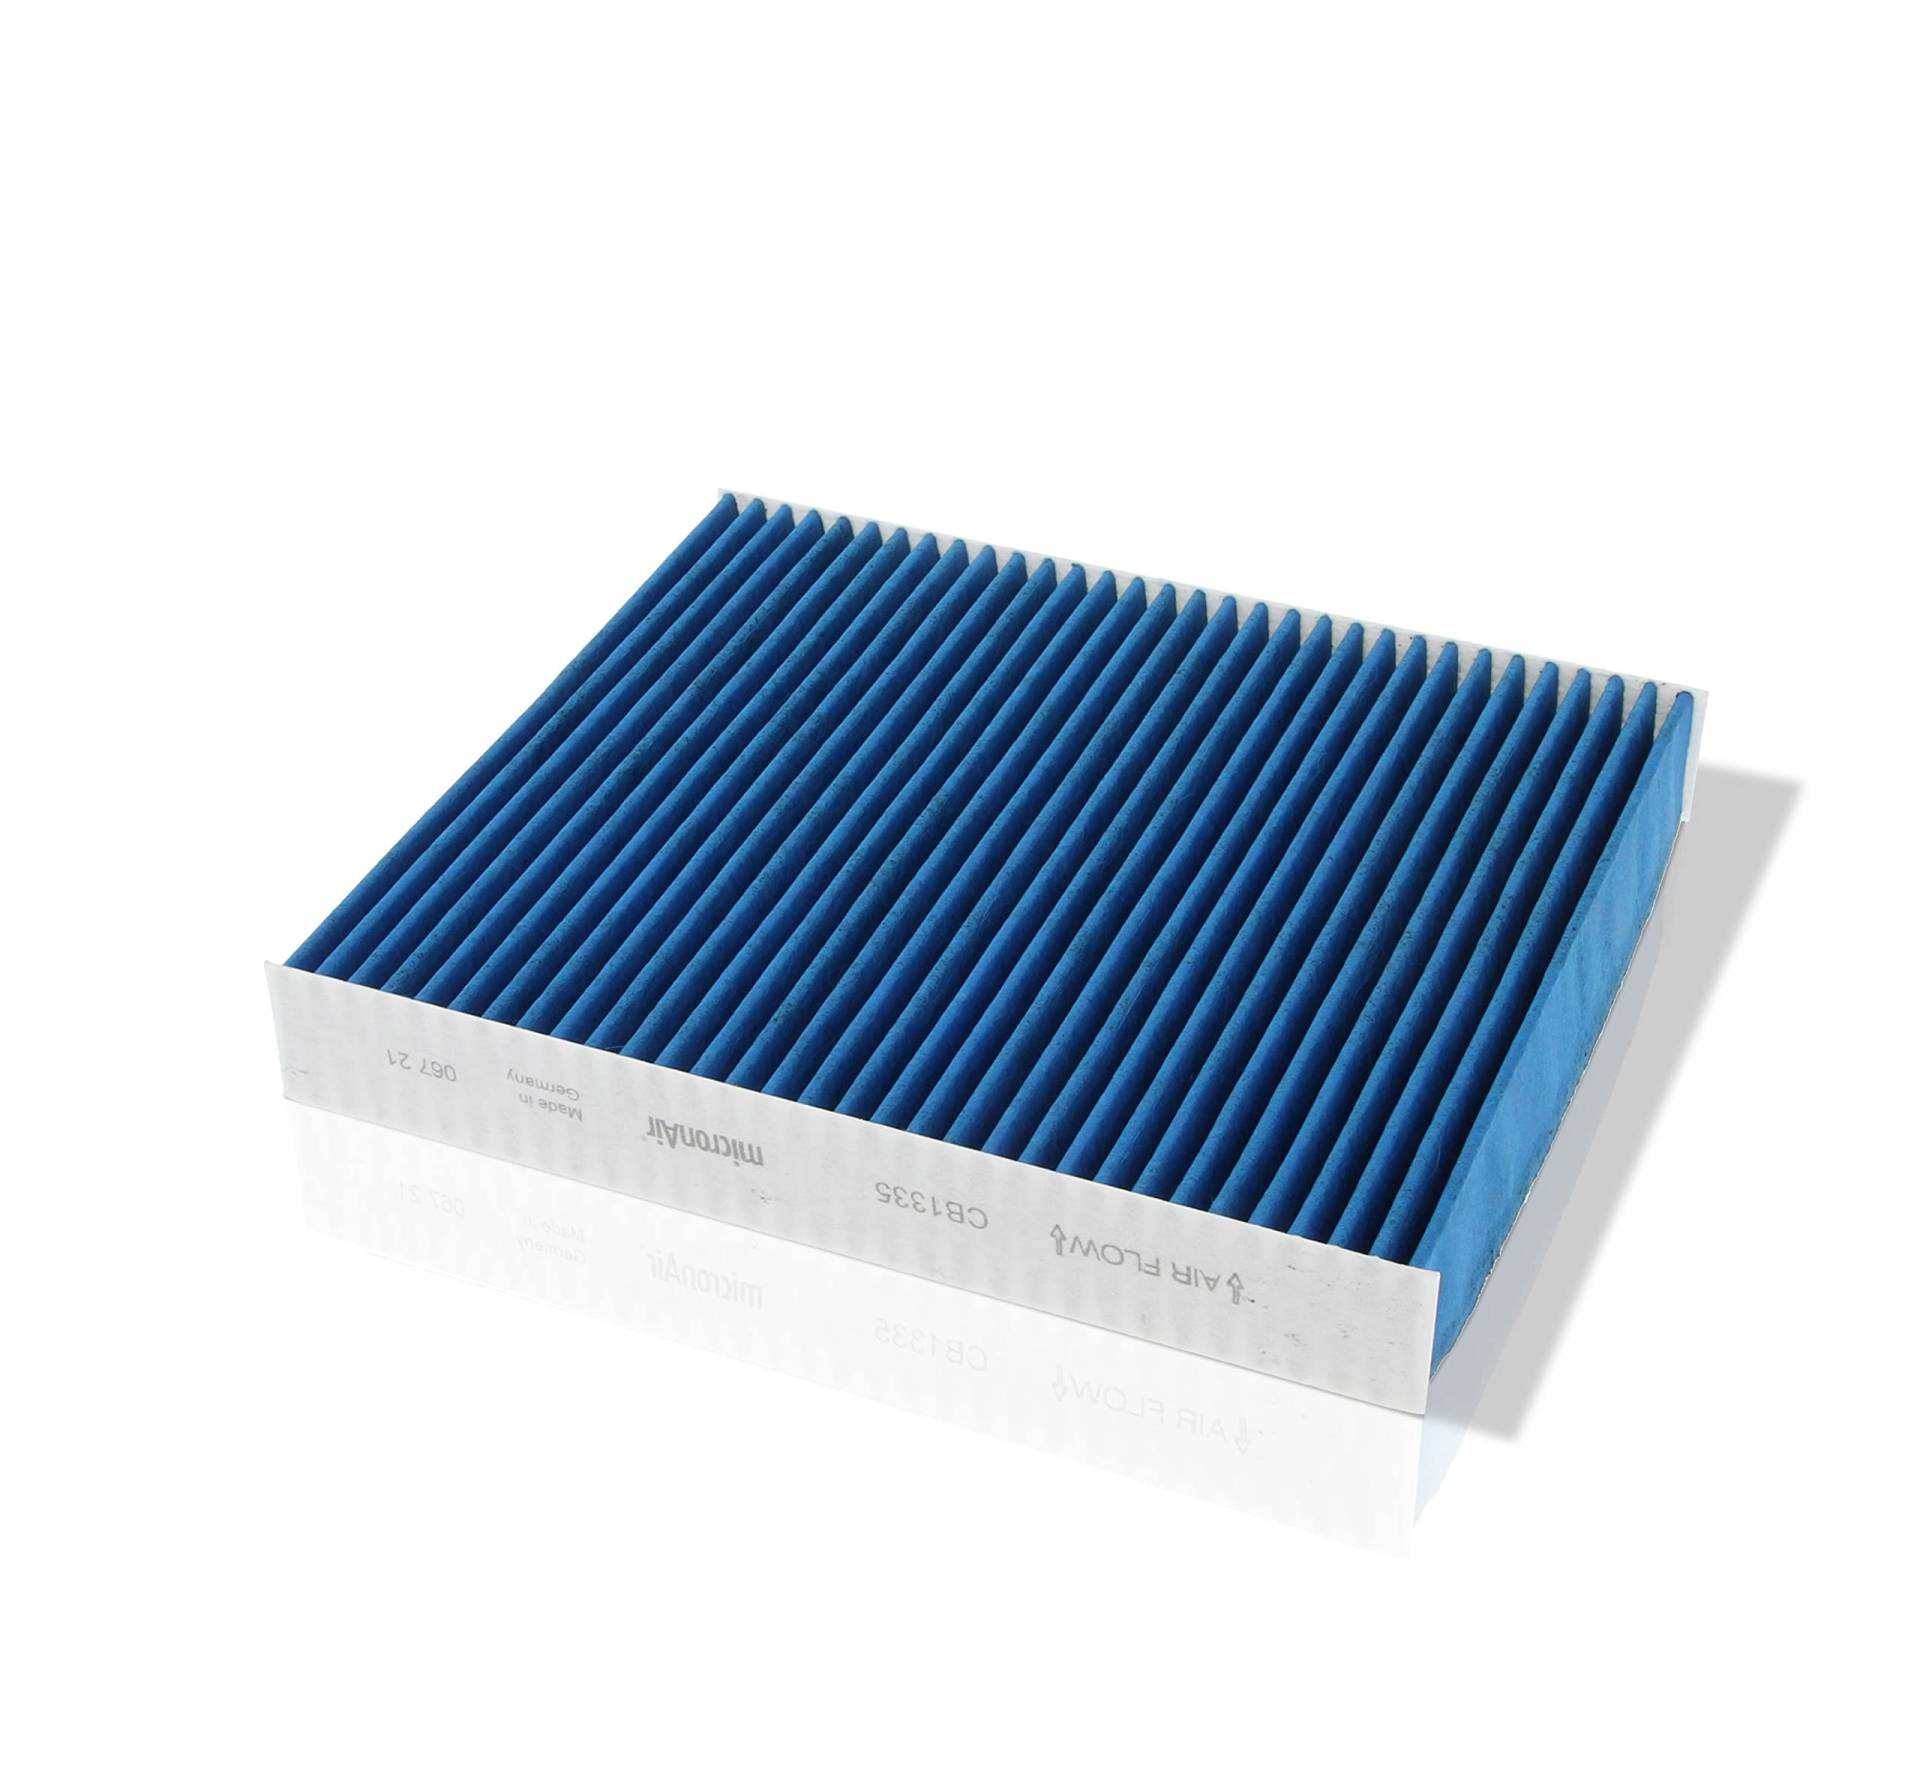 Corteco micronAir blue 49408842, Innenraumfilter fürs Auto mit 4 Filterschichten für hohe Luftqualität, effektiver Schutz vor viralen Aerosolen, Pollen & Allergenen, Feinstaub & Gasen – für PKW von Corteco